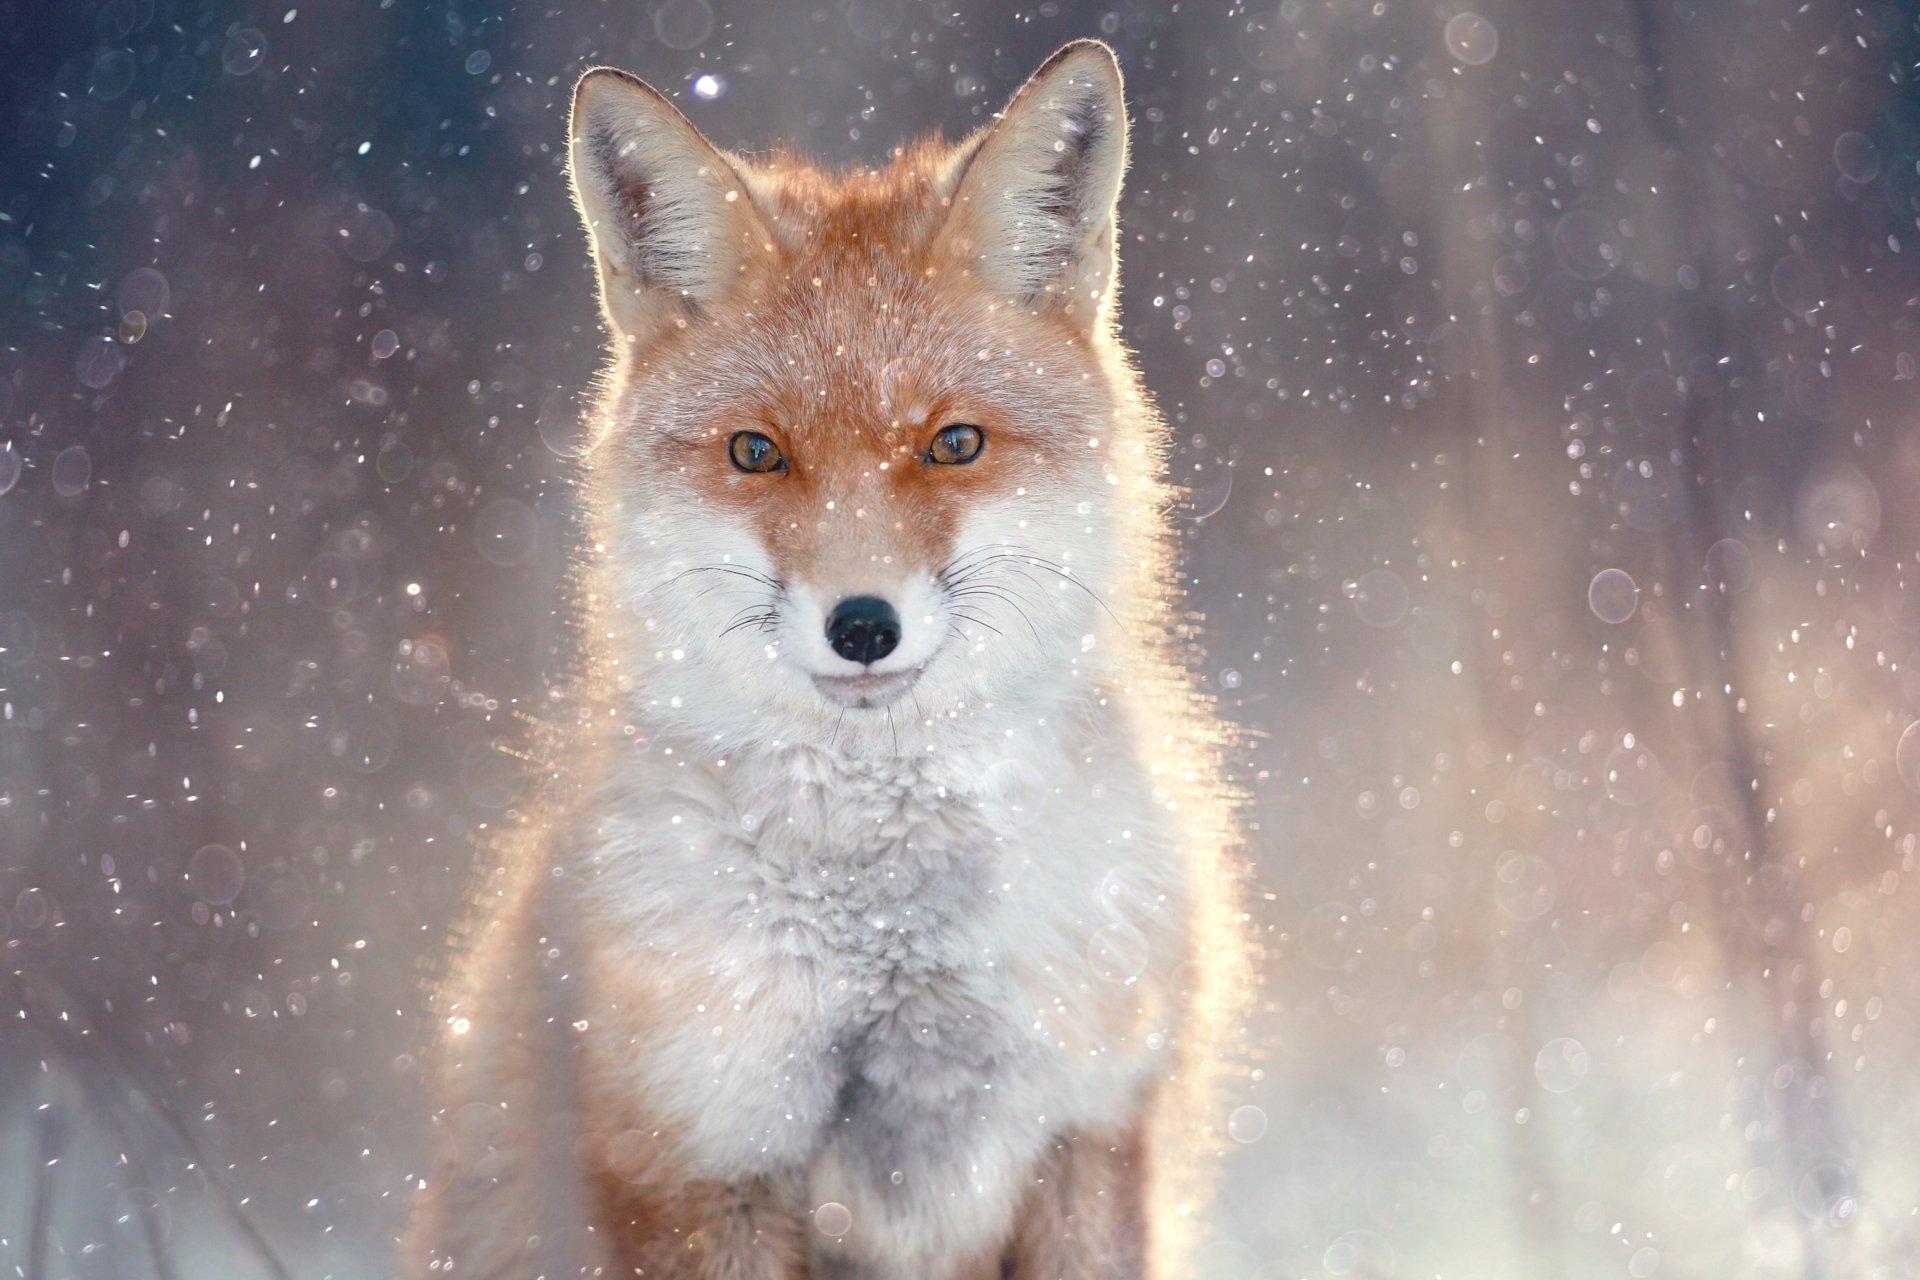 下载壁纸 白狐, 白, 狐狸, 北极狐 免费为您的桌面分辨率的壁纸 4117x2745 — 图片 №652158